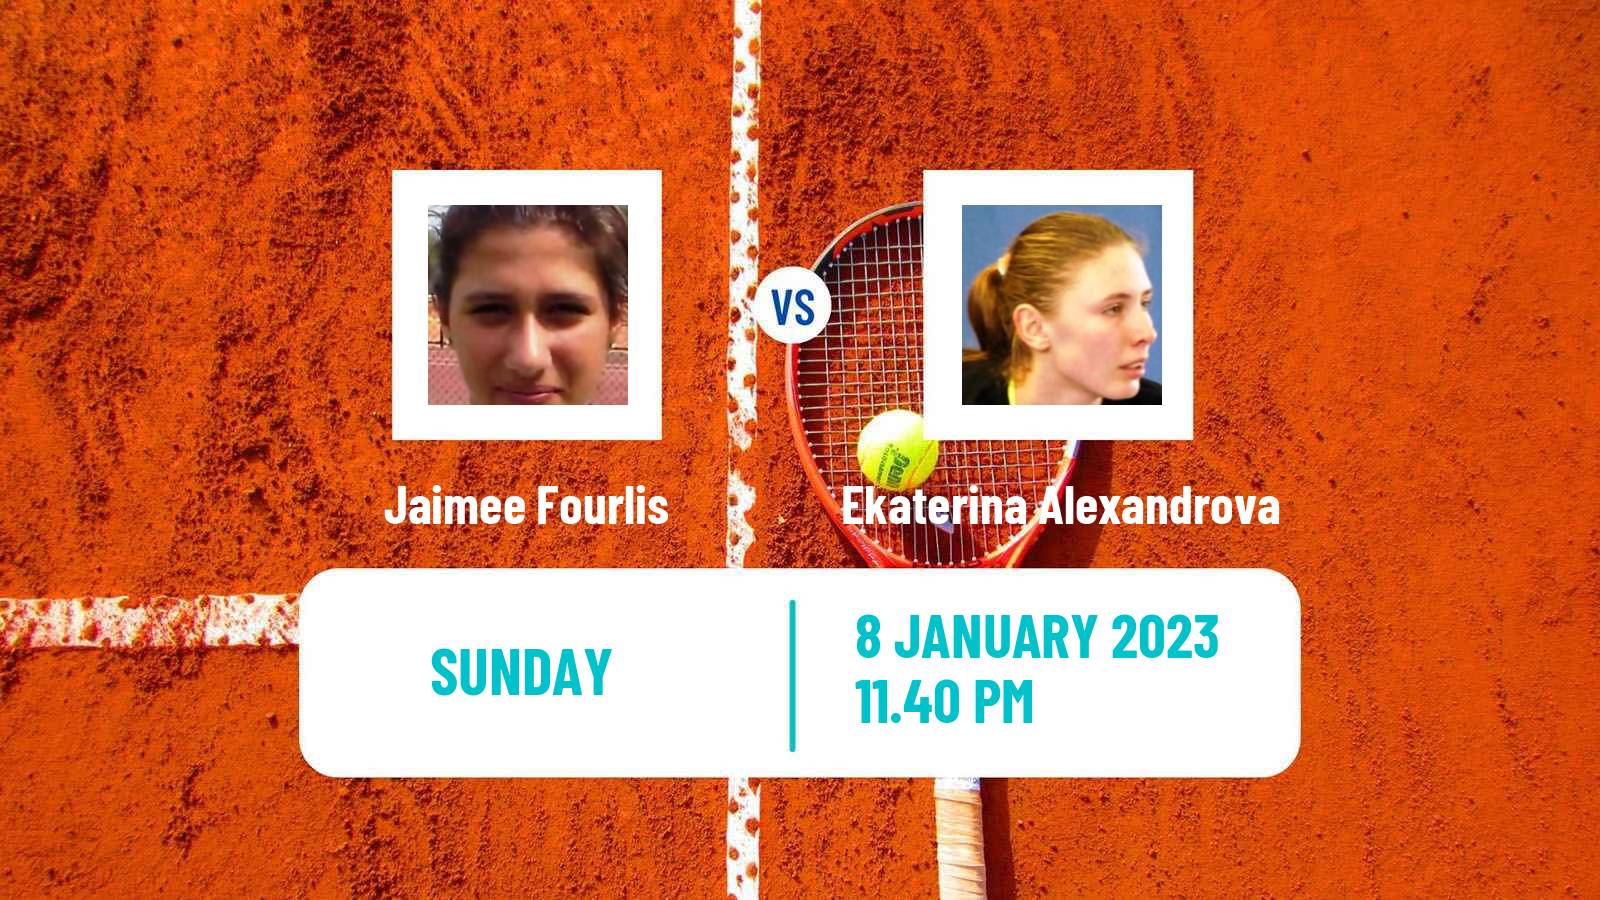 Tennis WTA Adelaide 2 Jaimee Fourlis - Ekaterina Alexandrova